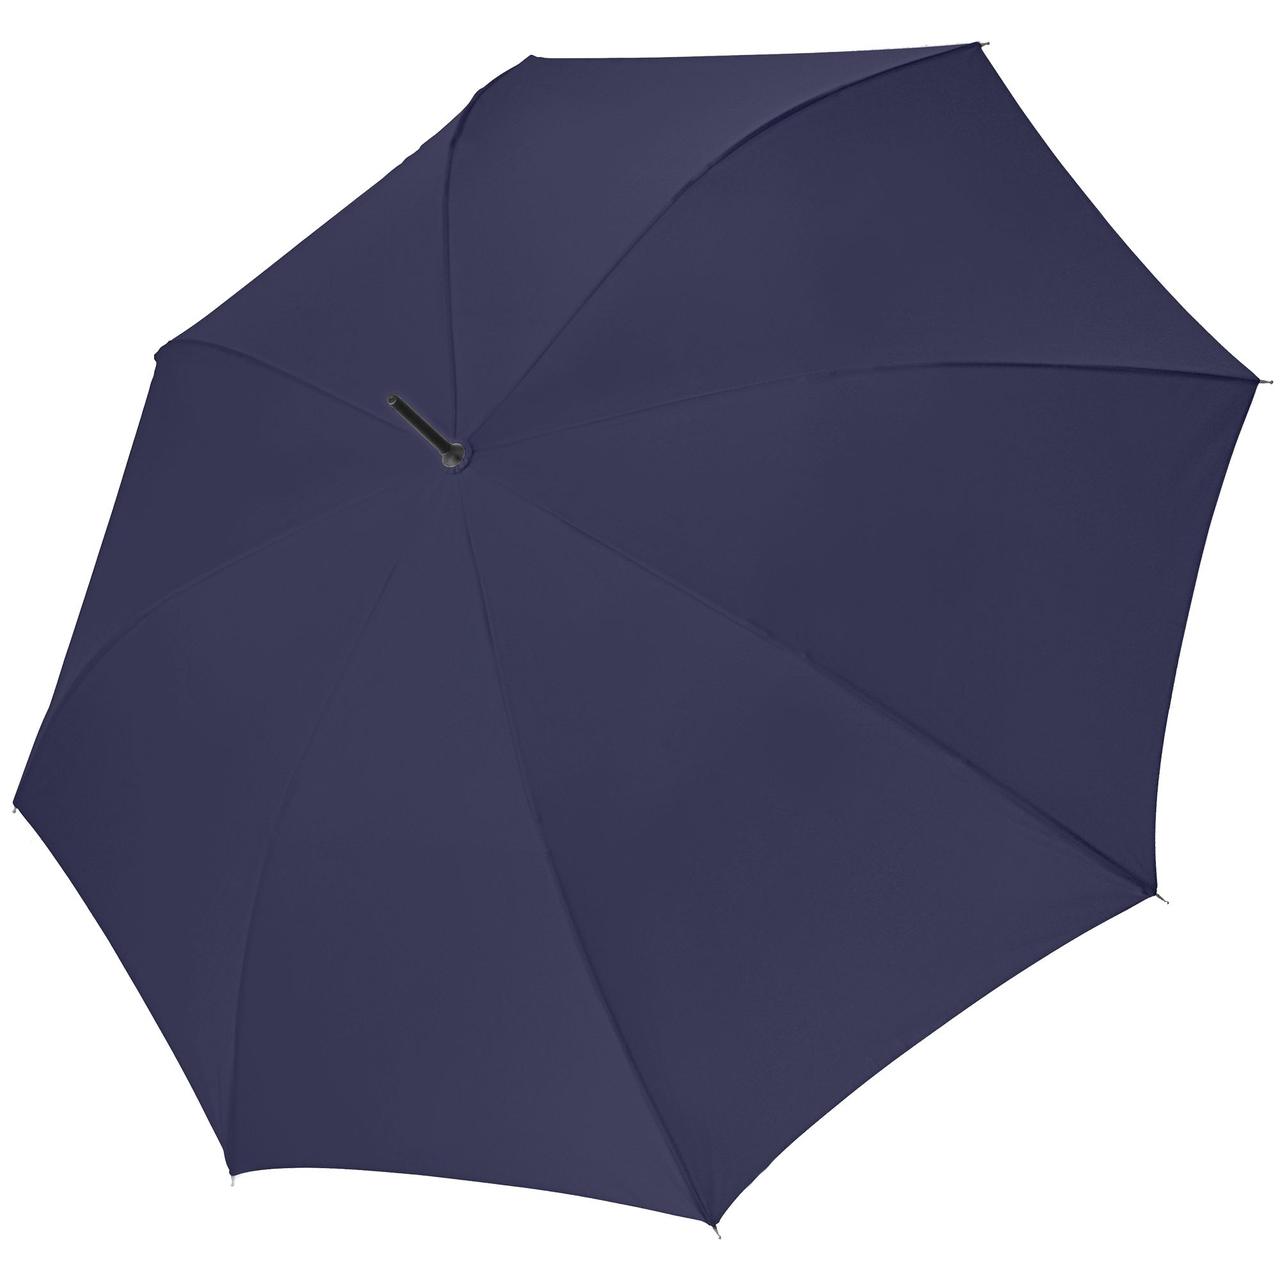 Зонт-трость Bristol AC, темно-синий (артикул 11844.40)